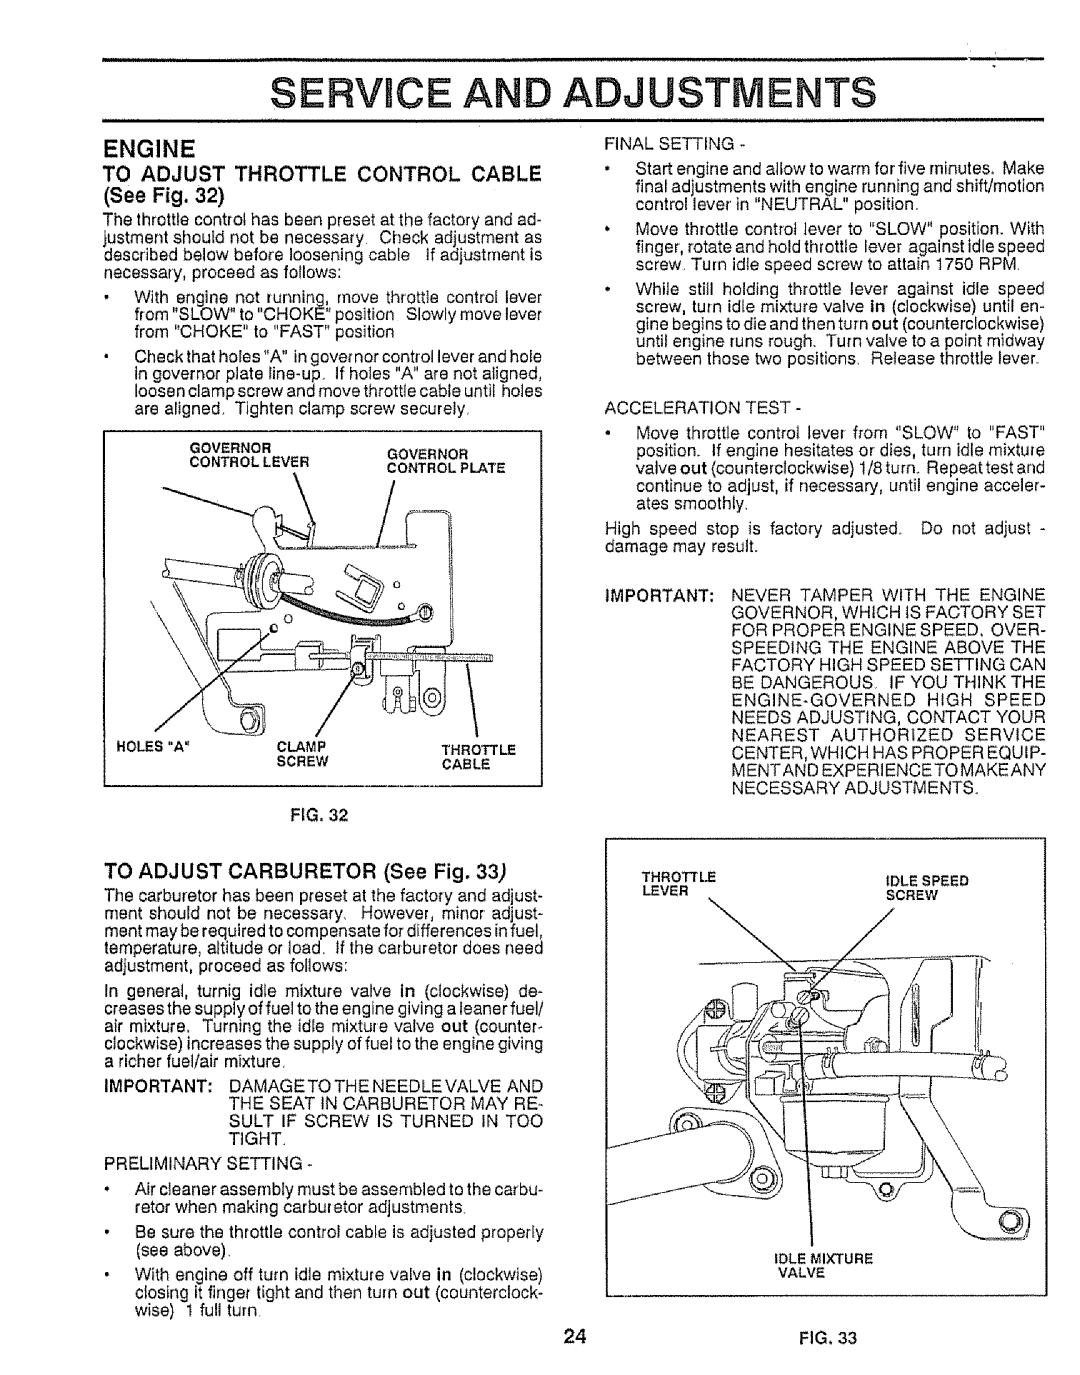 Craftsman 917.25552 manual Service, Engine, To Adjust Throttle Control Cable, TO ADJUST CARBURETOR See Fig, Adjustments 